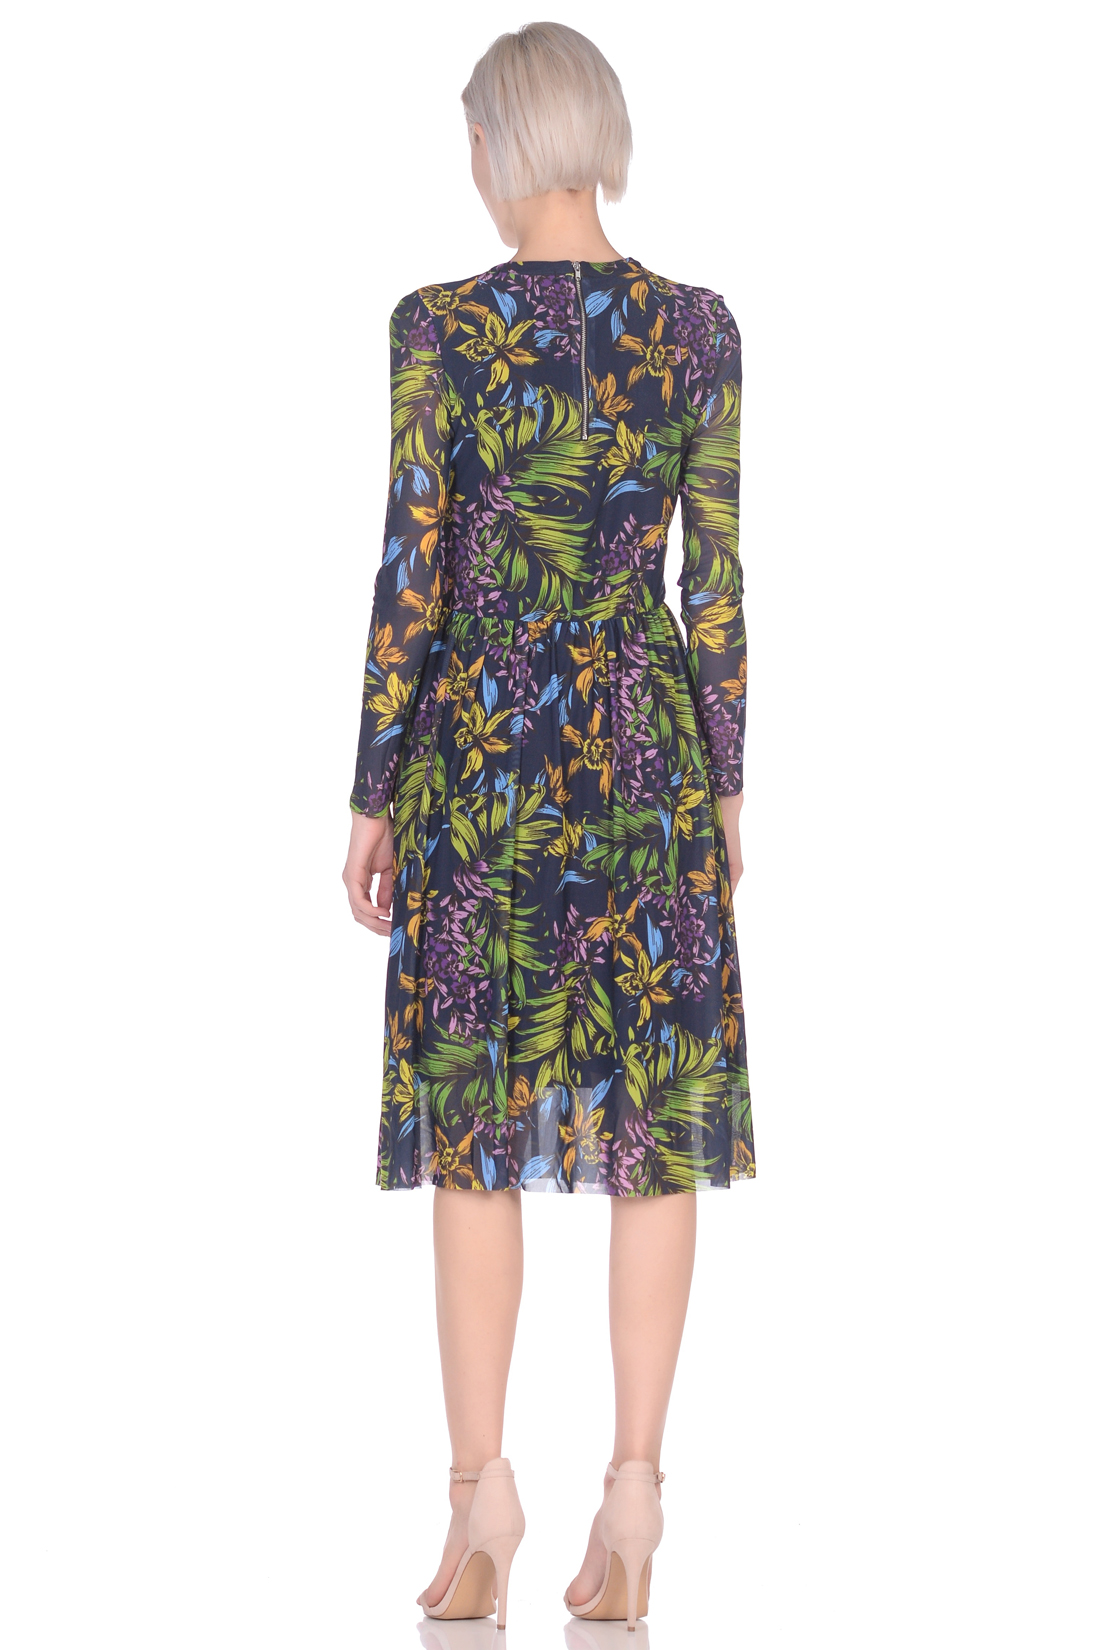 Платье из трикотажной сетки (арт. baon B459100), размер XS, цвет dark navy printed#синий Платье из трикотажной сетки (арт. baon B459100) - фото 4